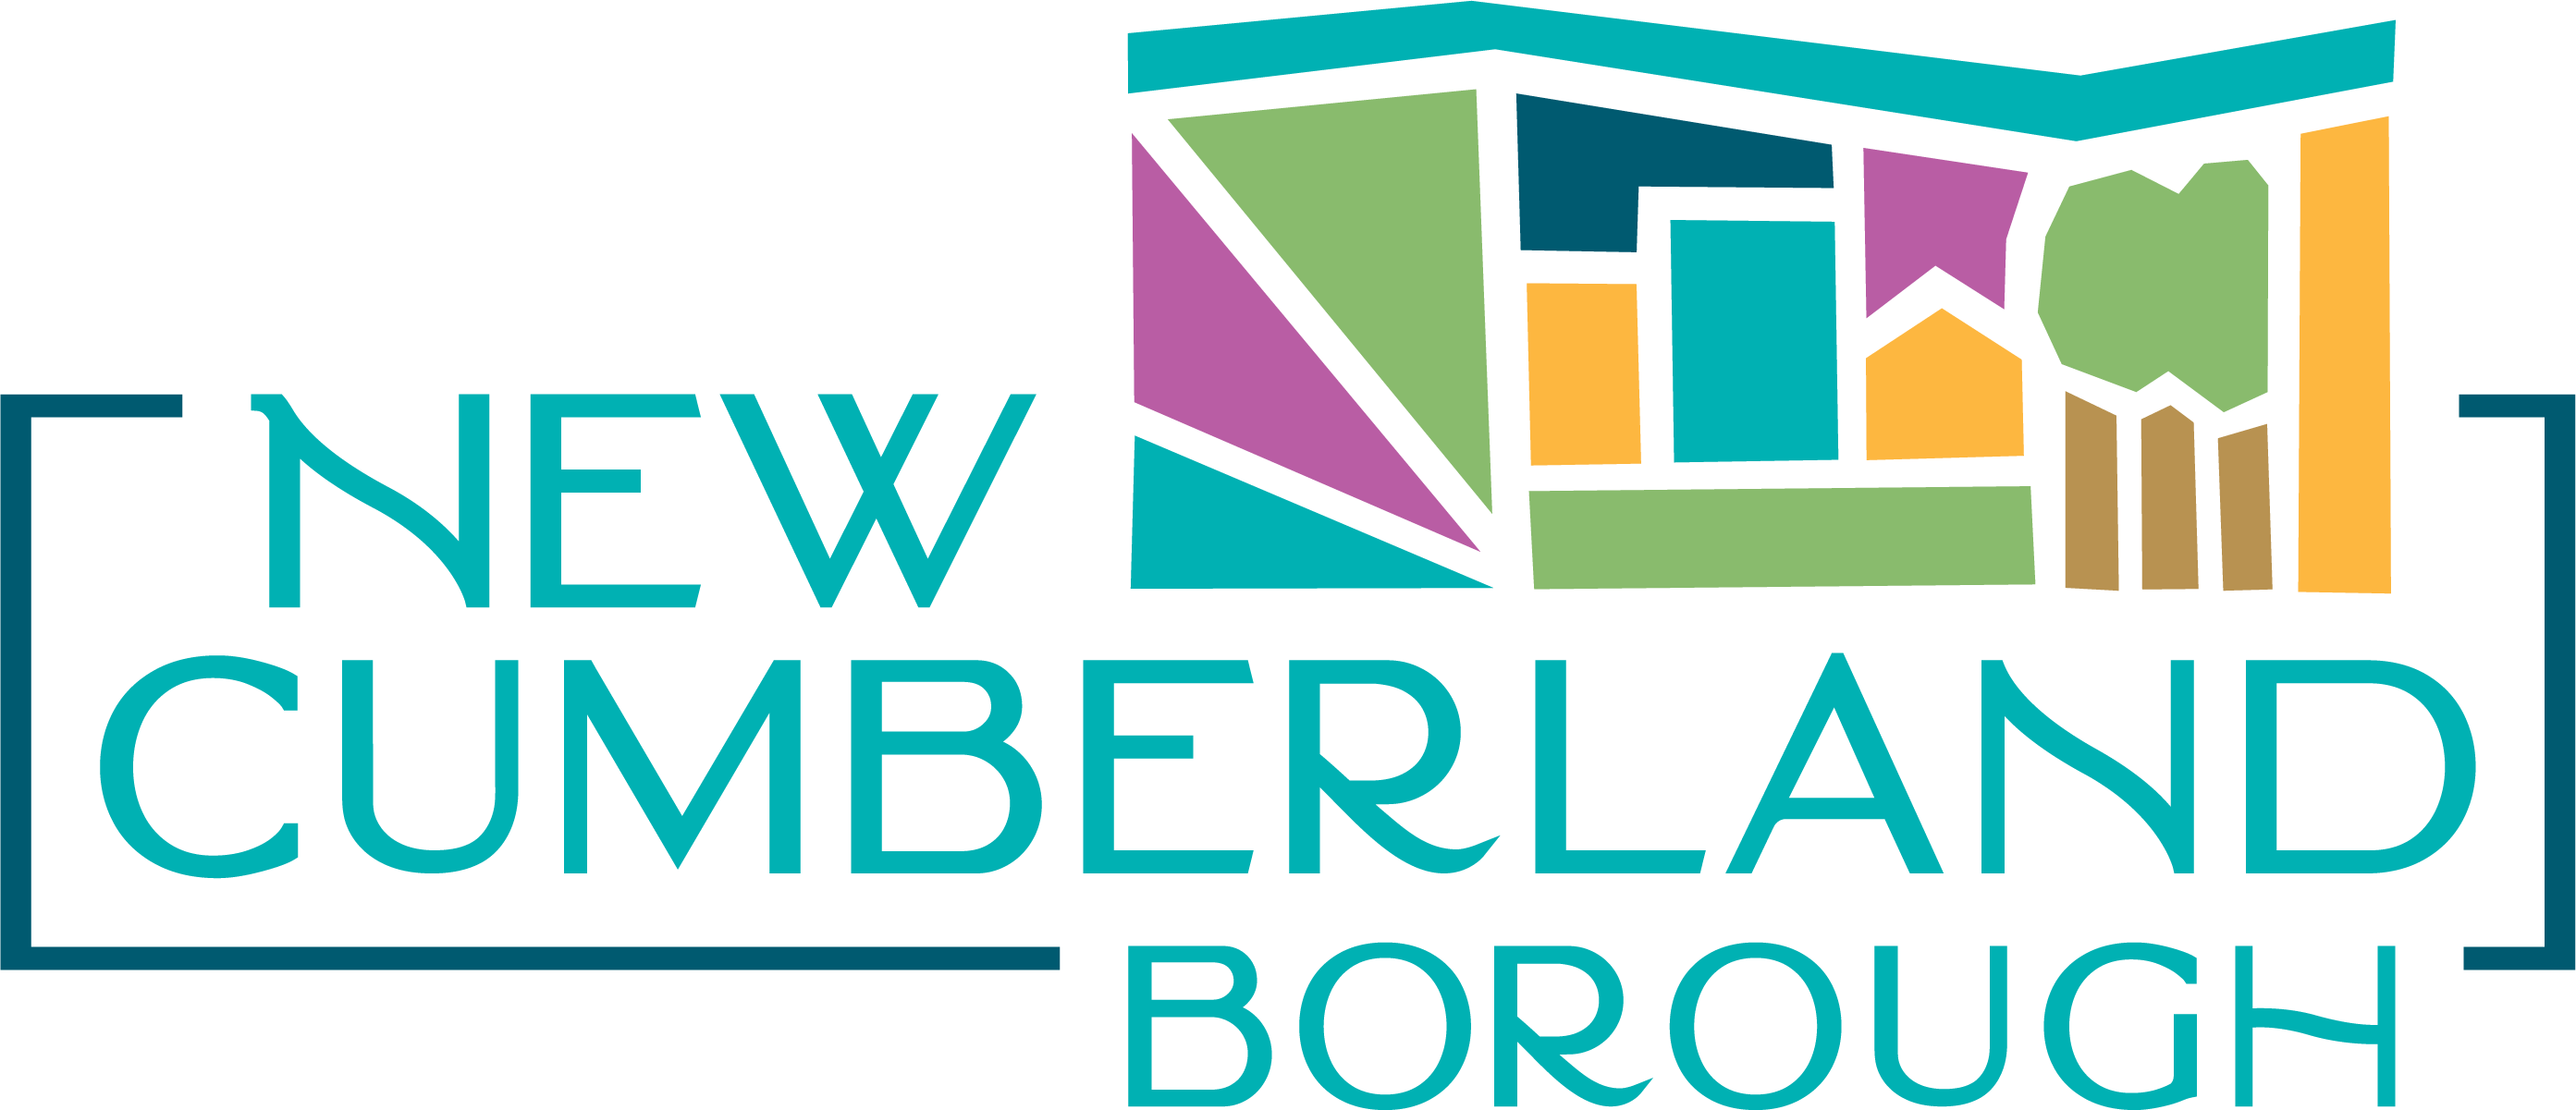 New Cumberland Borough